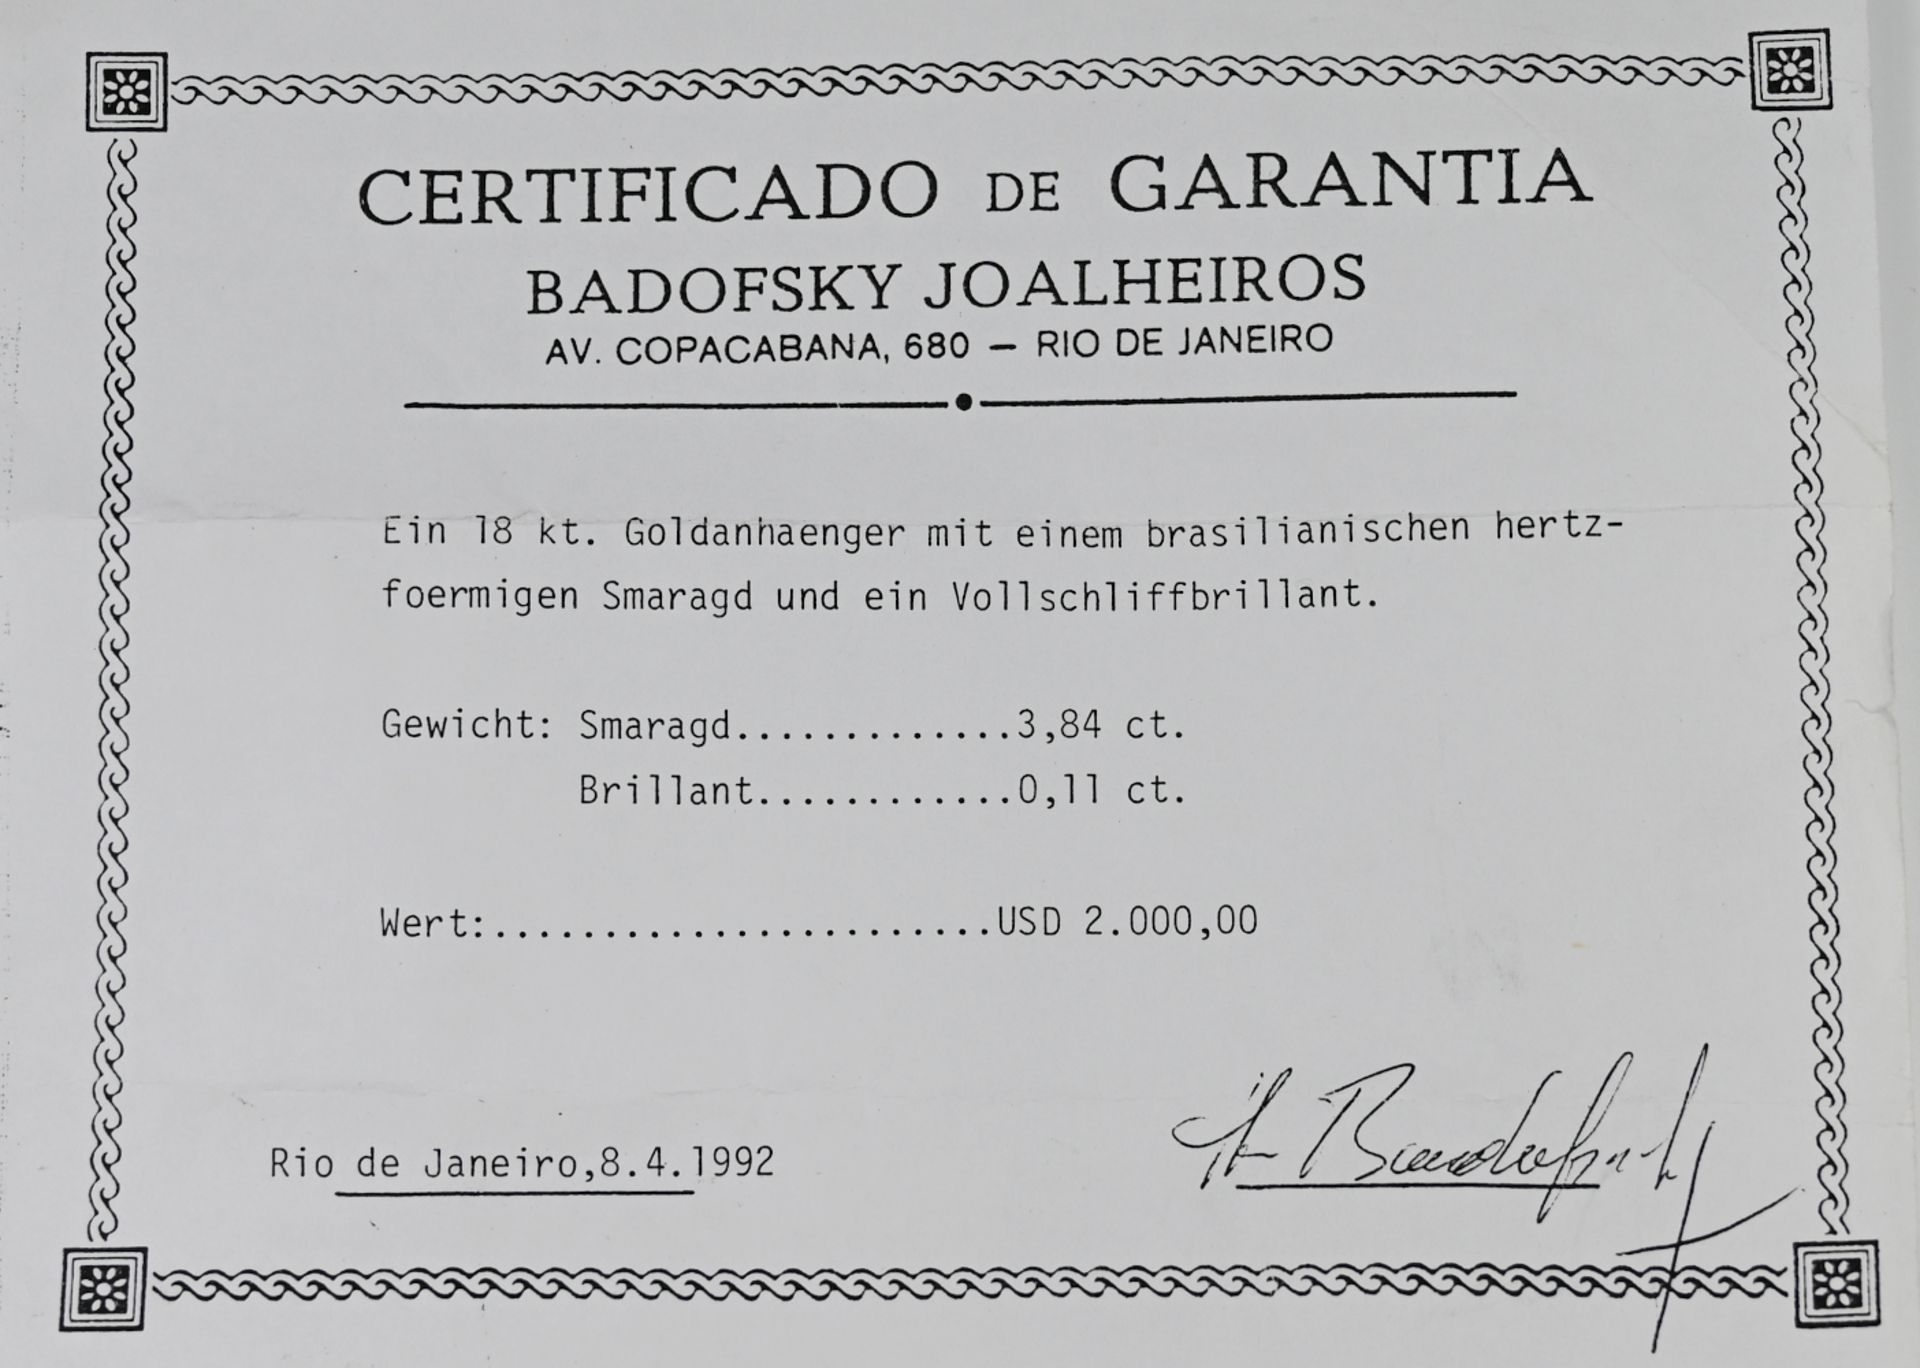 1 Anhänger/-clip GG 18ct., lt. Kopie des Zertifikats: Brasilianischer herzförmiger Smaragd ca. 3,84c - Image 2 of 2